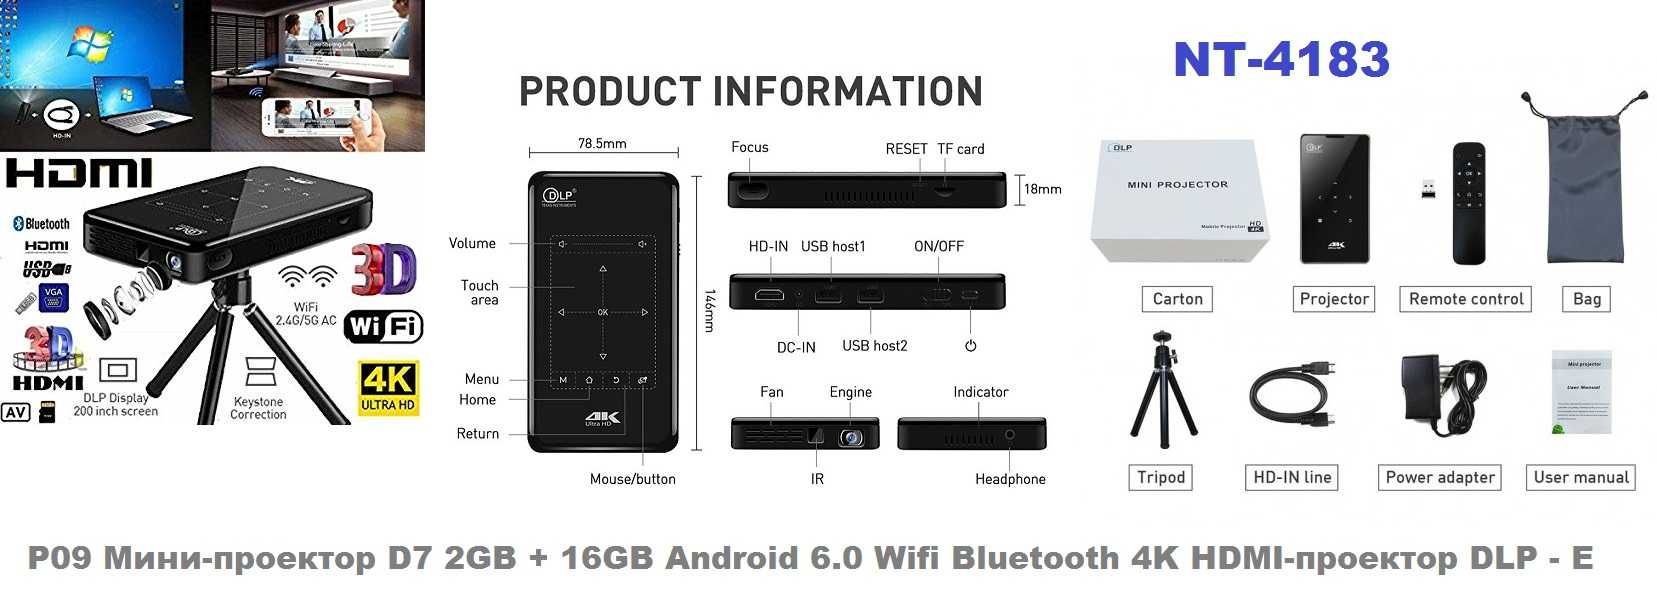 Проектор мини  proektor WiFi smart  P09II   1+8       (NT4183)